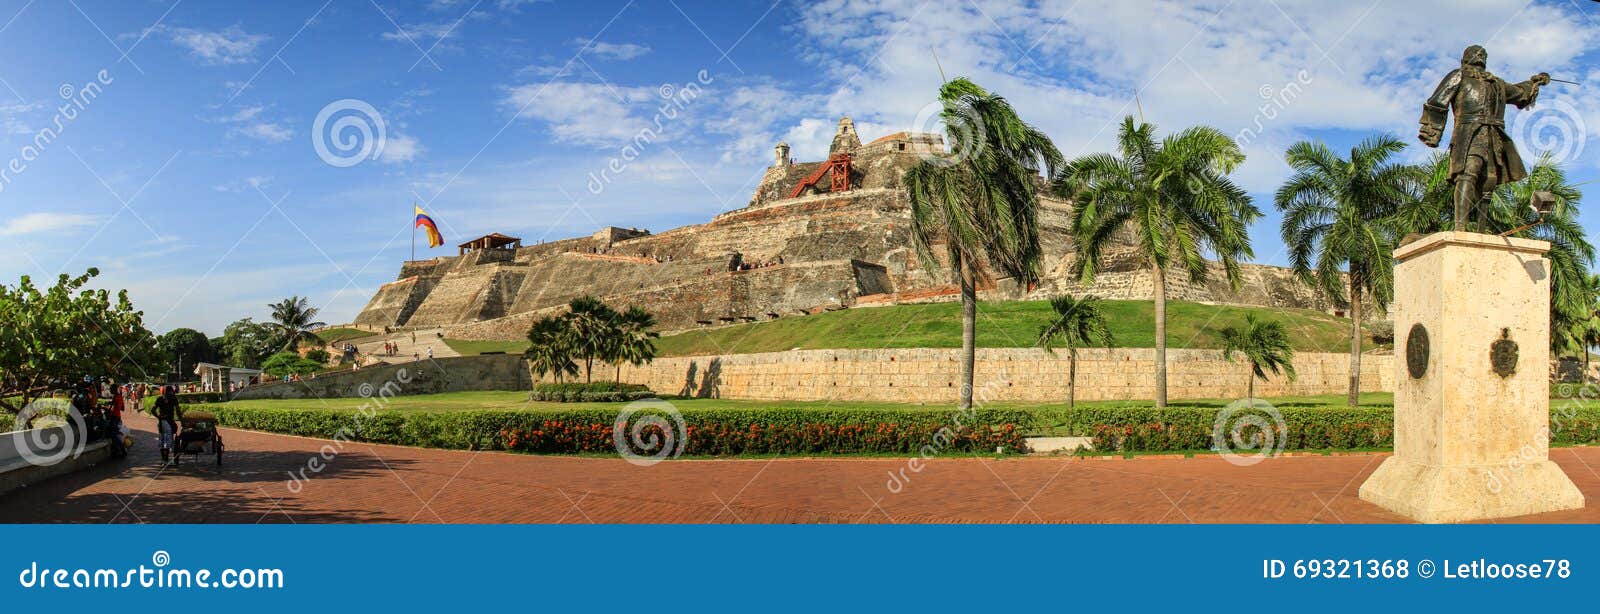 panoramic view of the castillo san felipe de barajas, cartagena de indias, colombia